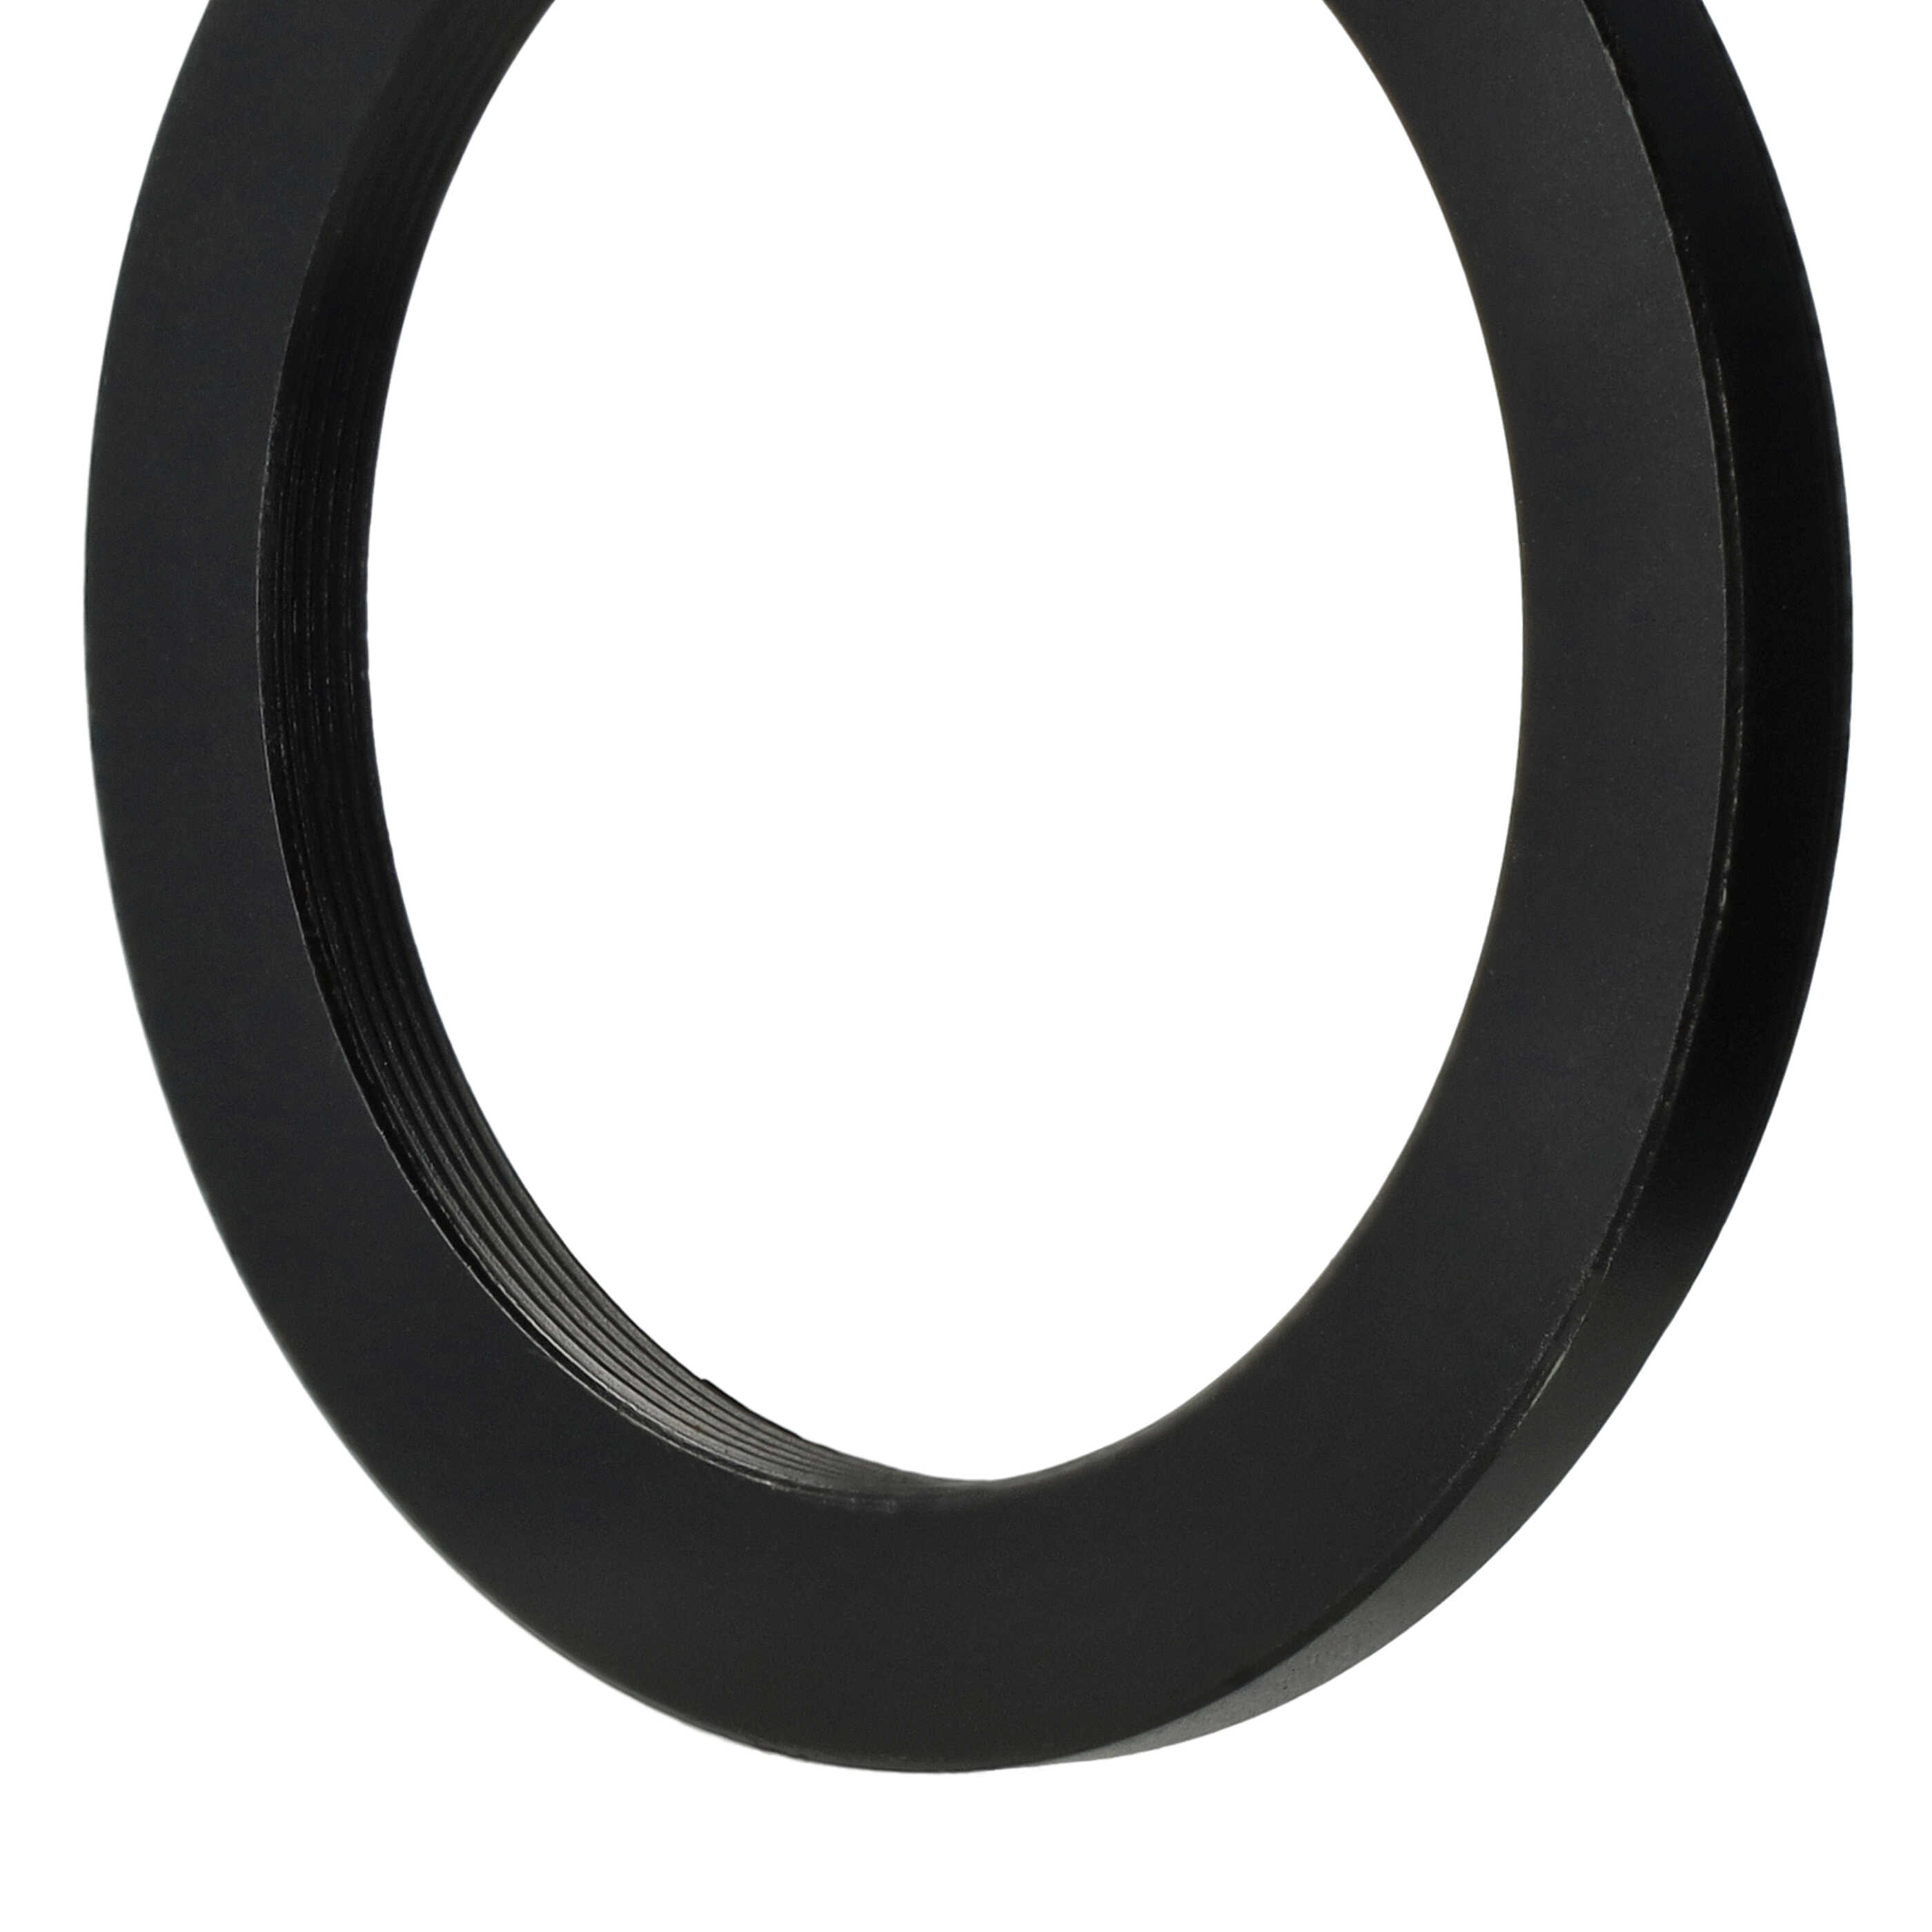 Step-Down-Ring Adapter von 62 mm auf 49 mm passend für Kamera Objektiv - Filteradapter, Metall, schwarz